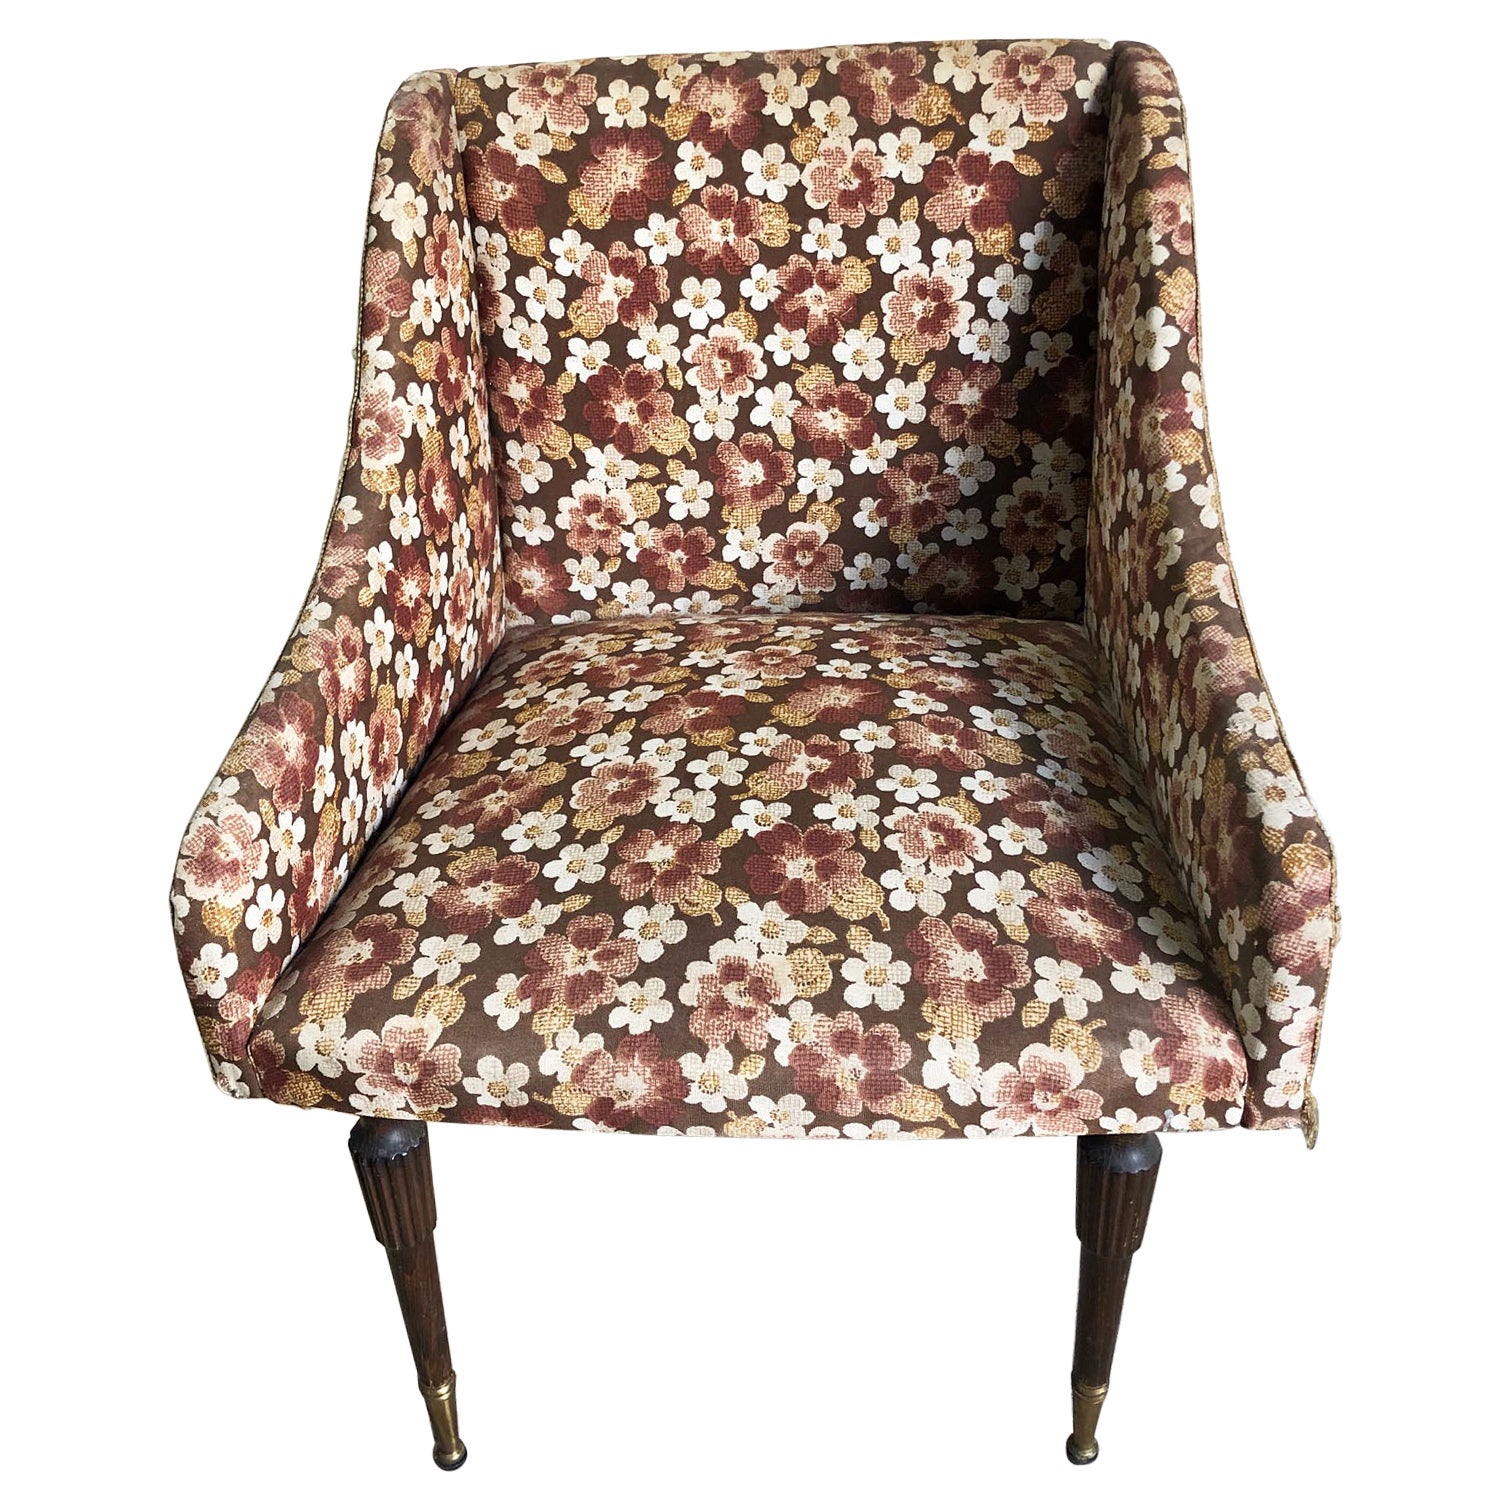 Original-Sessel aus den 60er Jahren, Stoff mit Blumenmotiv